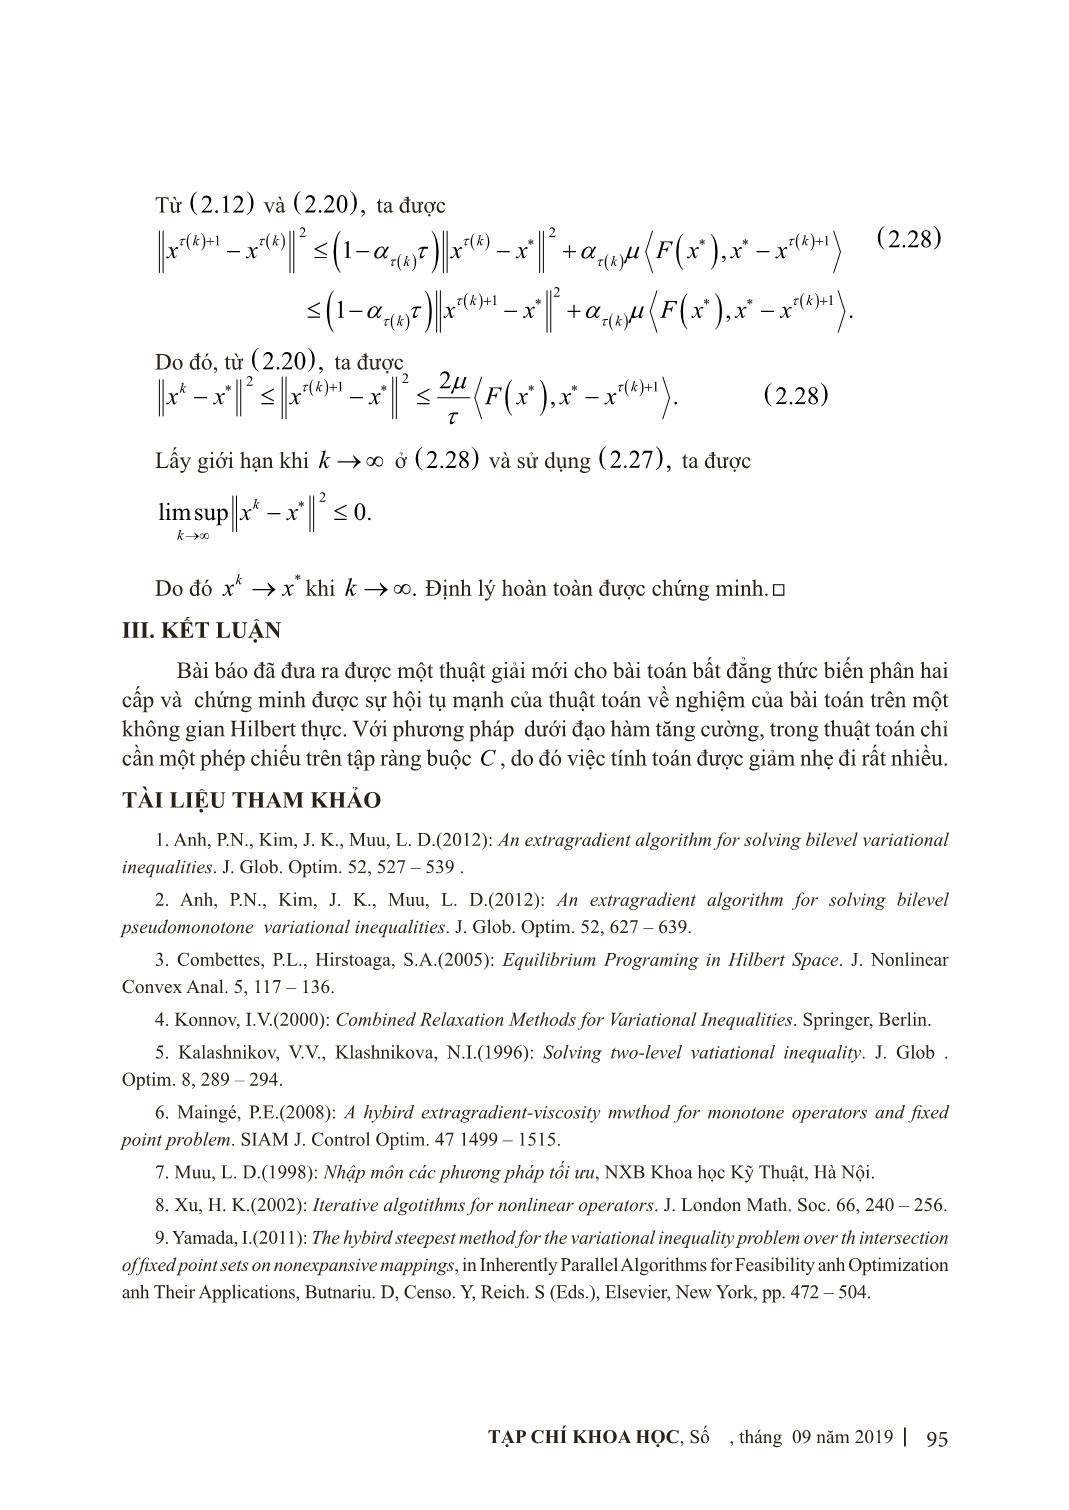 Phương pháp dưới đạo hàm tăng cường giải bài toán bất đẳng thức biến phân hai cấp trang 10